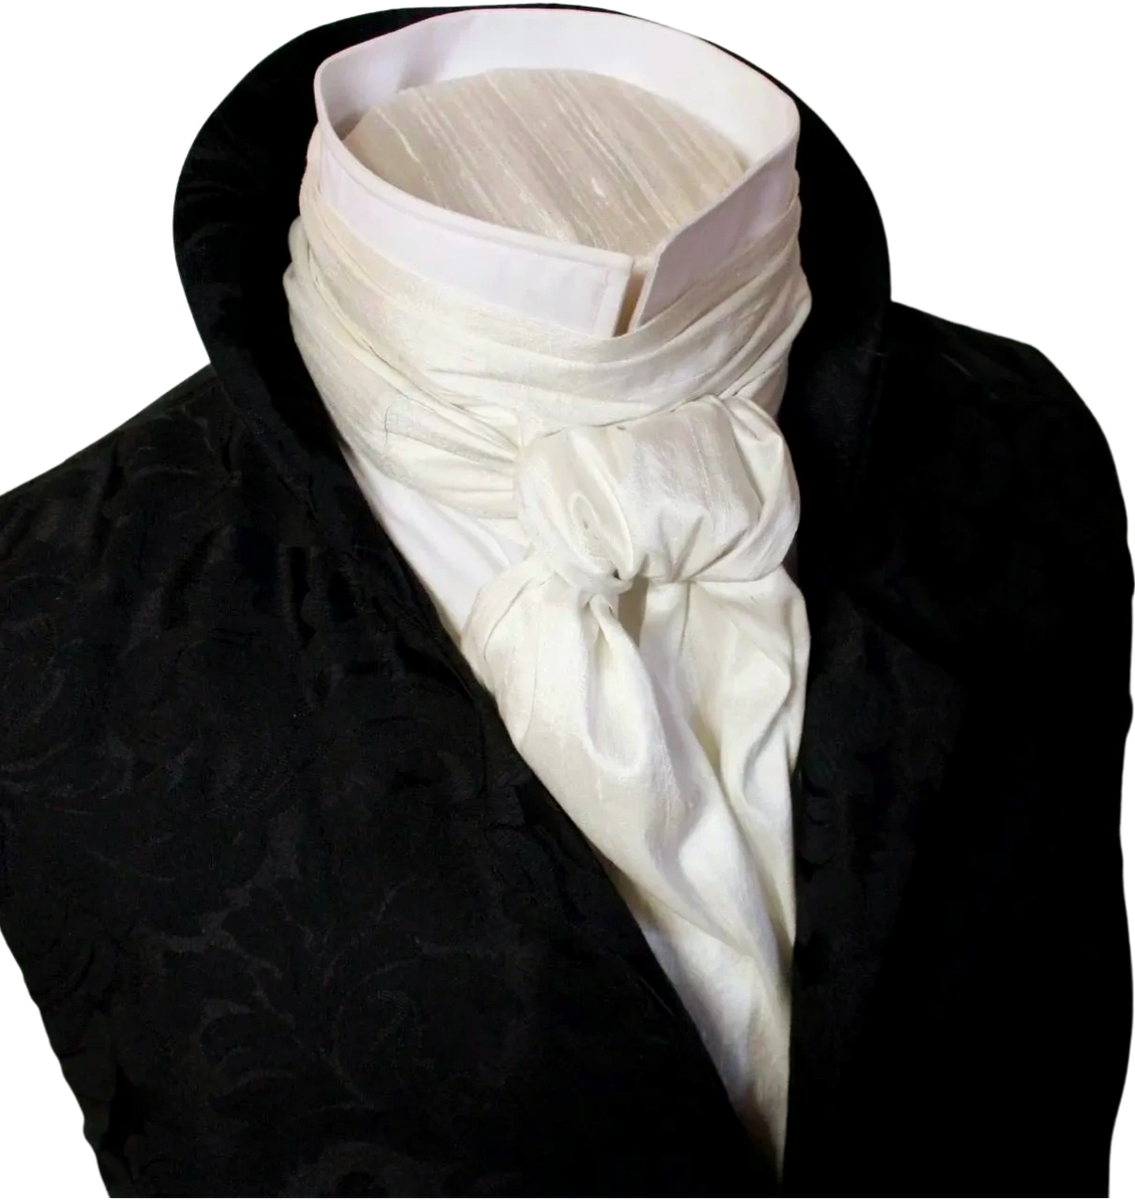 Titanium silver Dupioni Silk Formal Victorian Ascot Tie Cravat